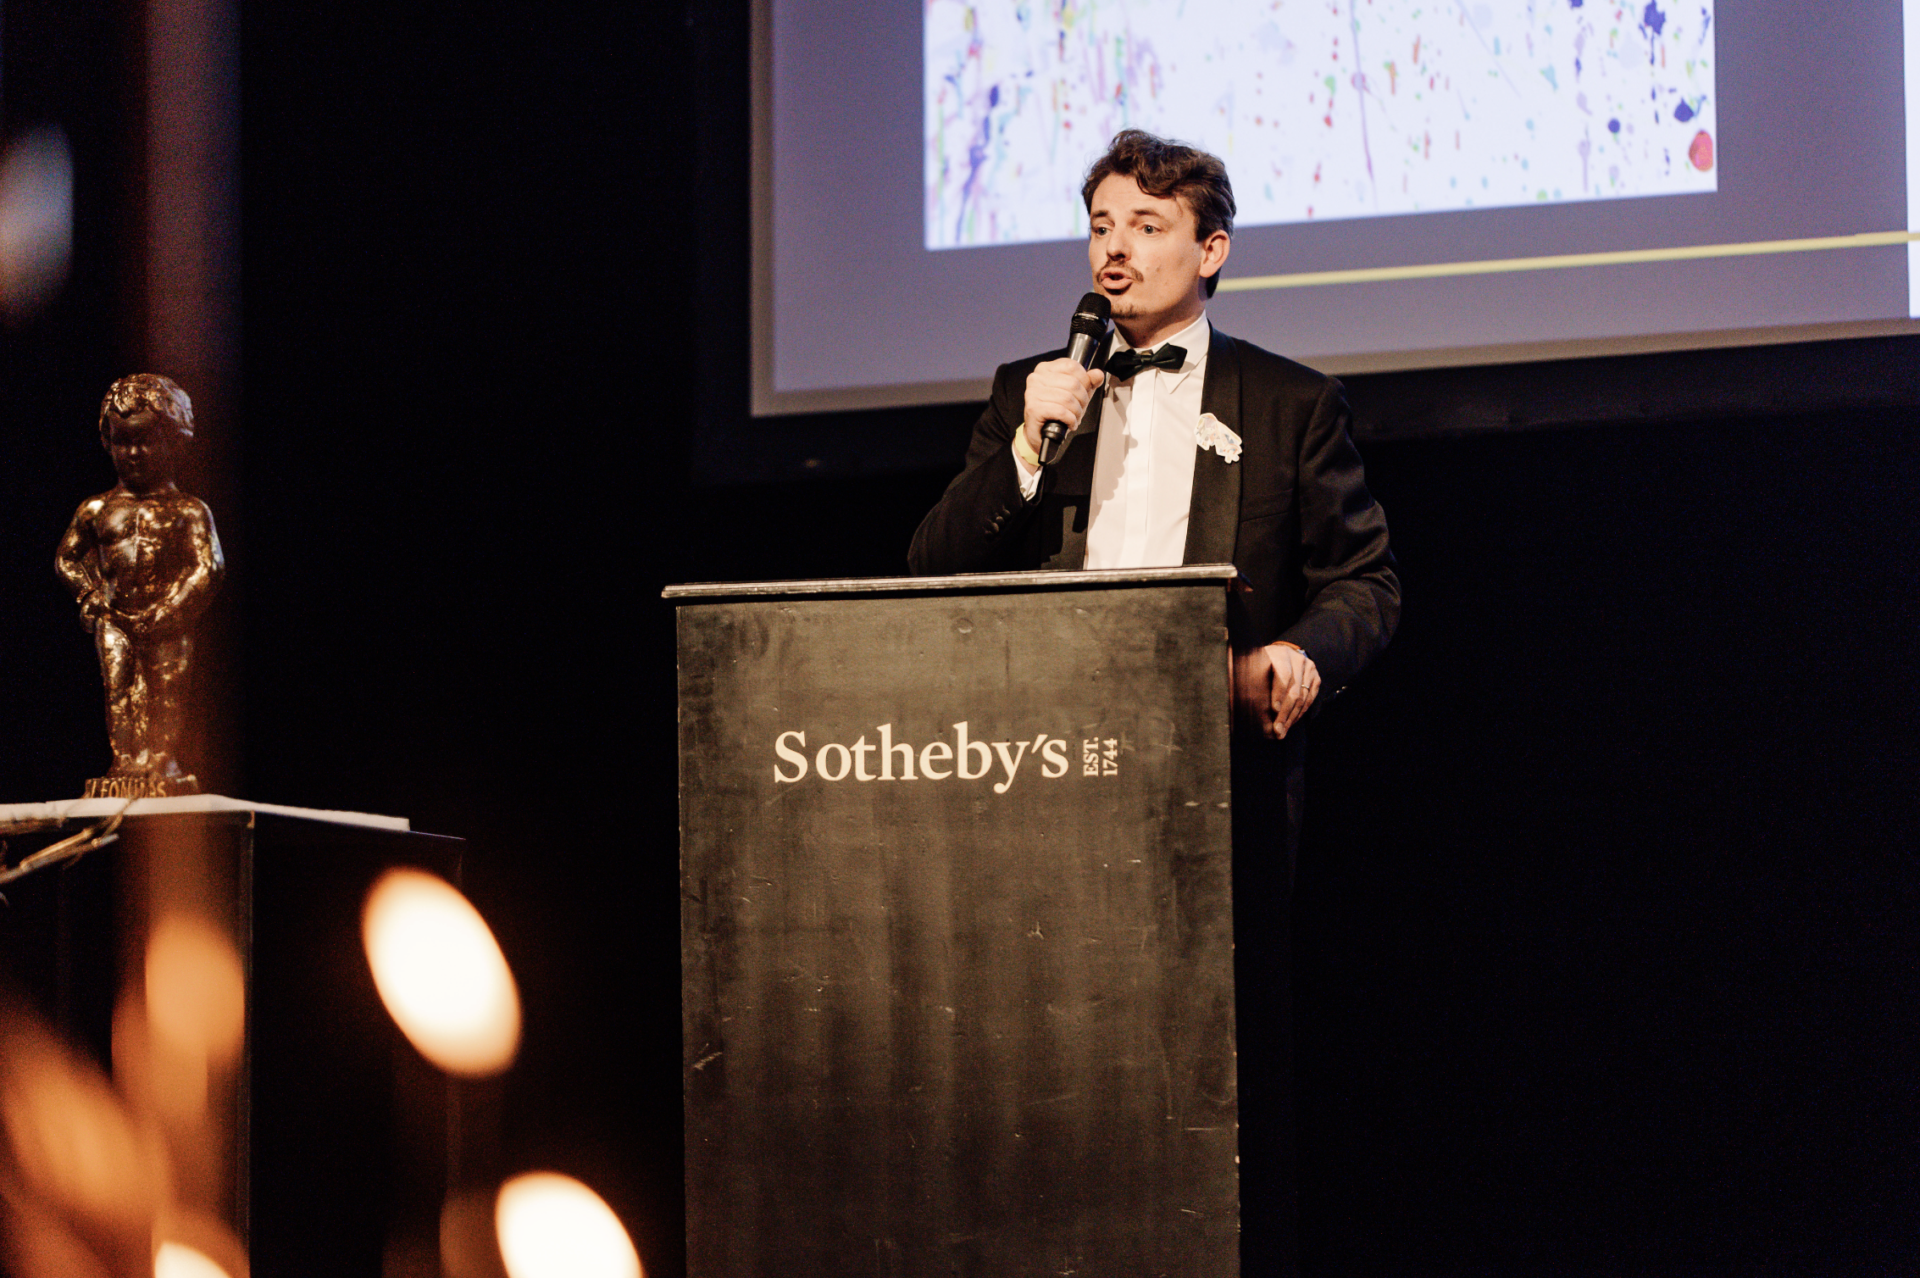 Emmanuel van De Putte van Sotheby's auction geeft een inleidende toespraak voor de veiling van de avond. 